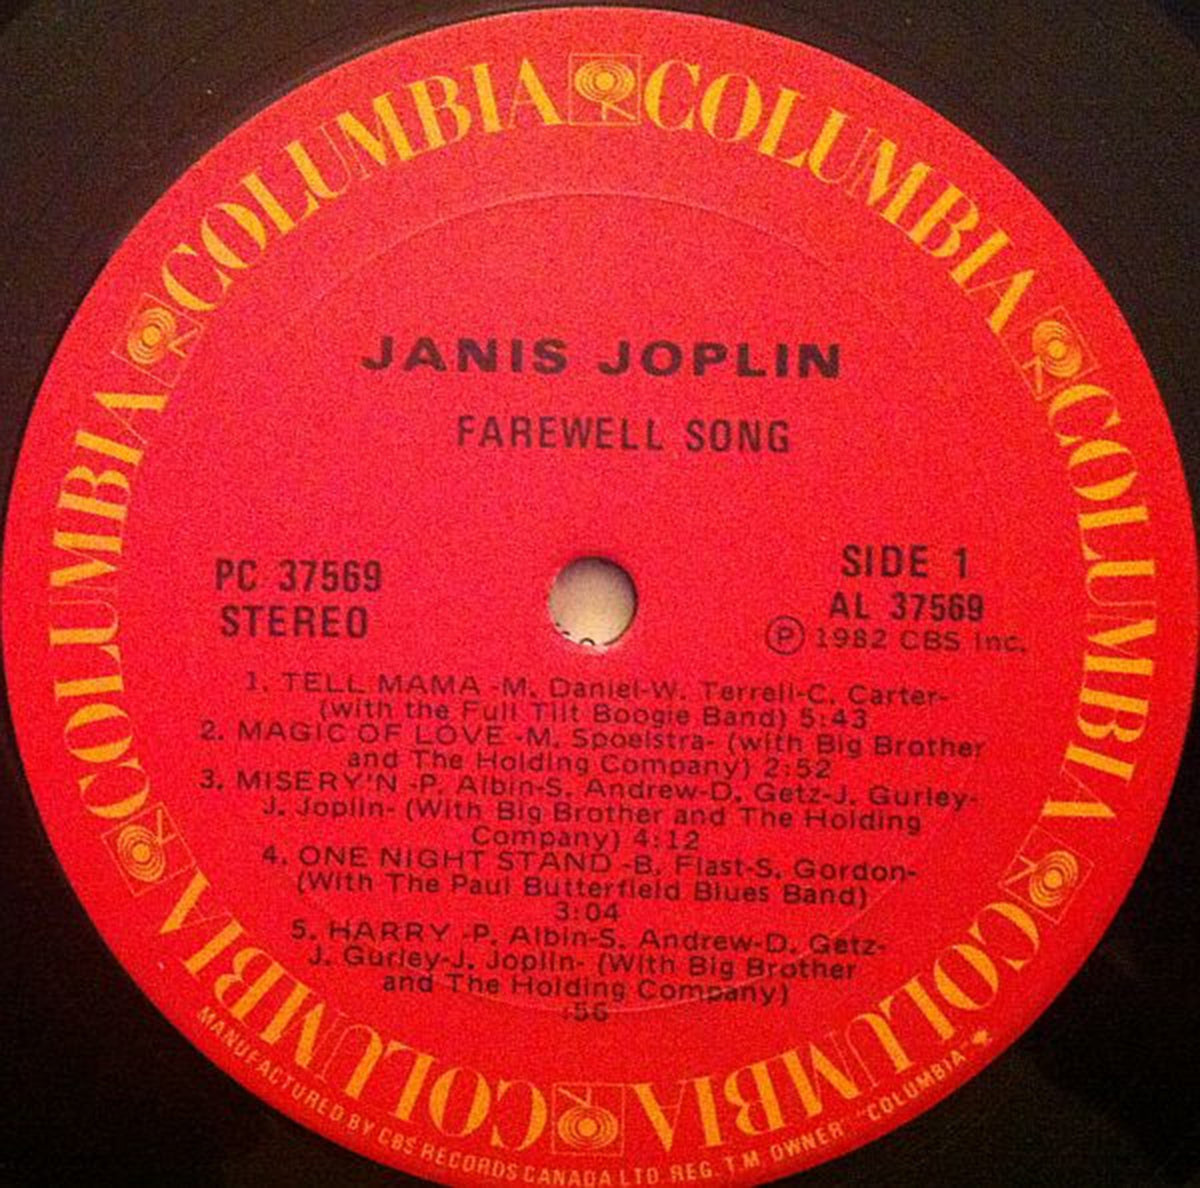 Janis Joplin – Farewell Song - 1982